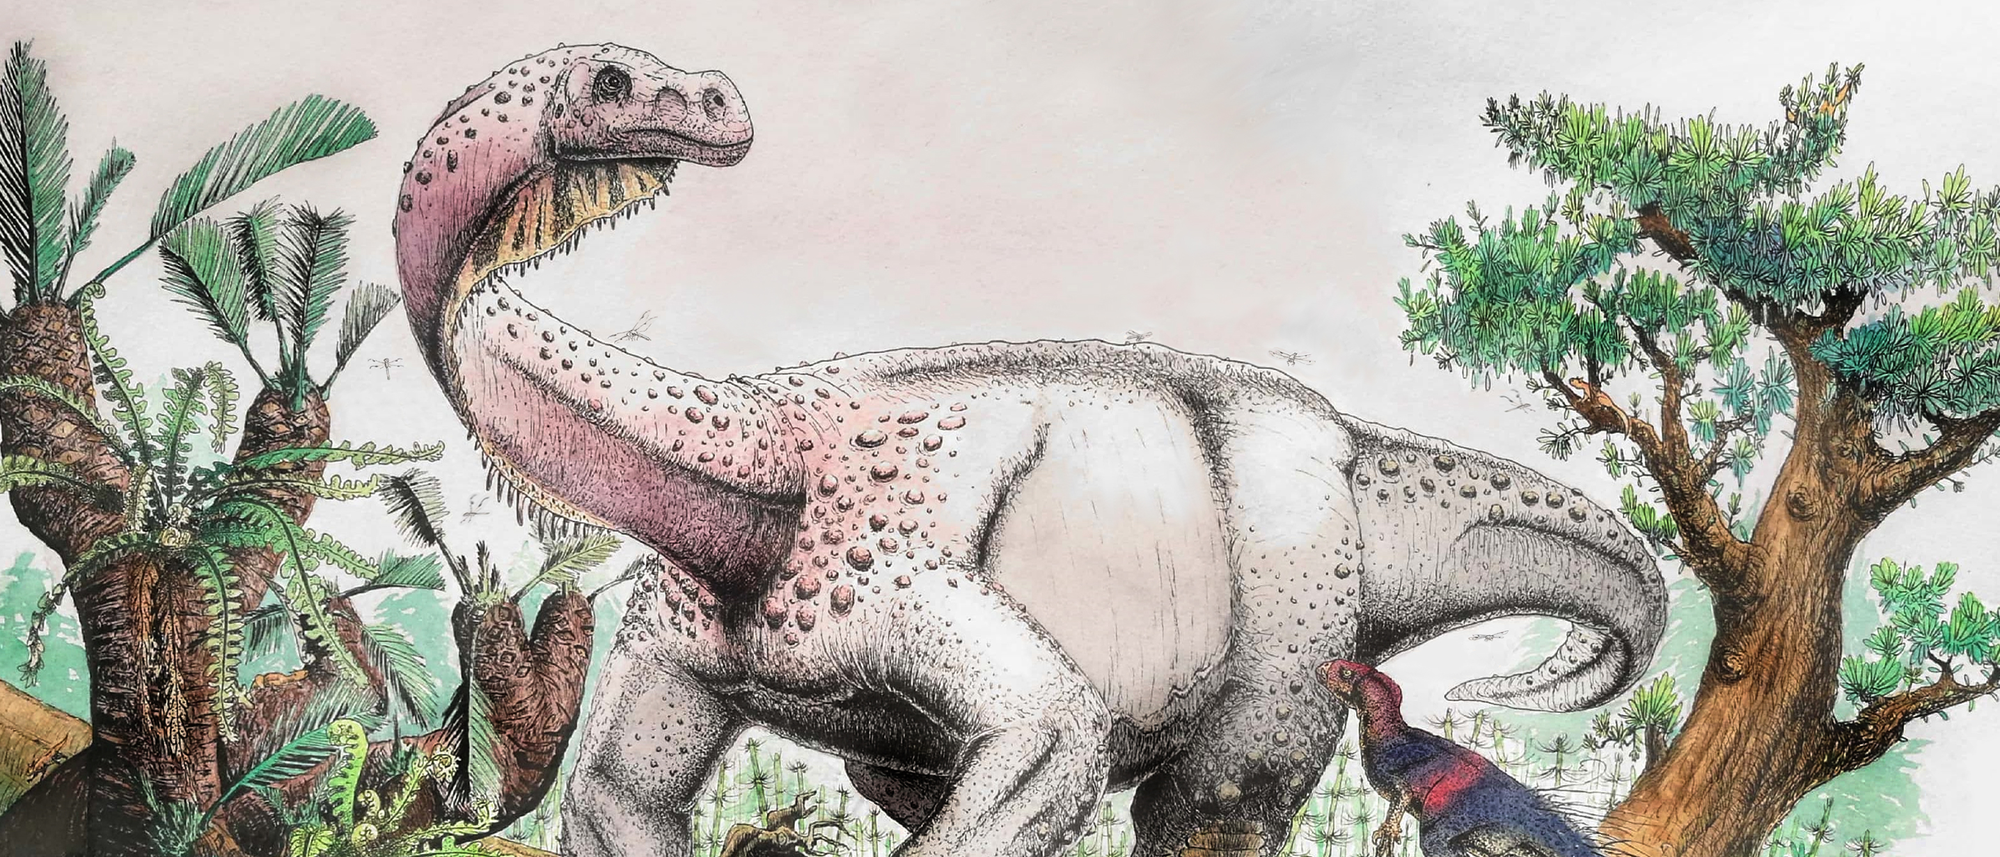 Zwölftonner auf dicken, krummen Beinen: So könnte der Brontosaurus-Verwandte »Ledumahadi mafube« ausgesehen haben